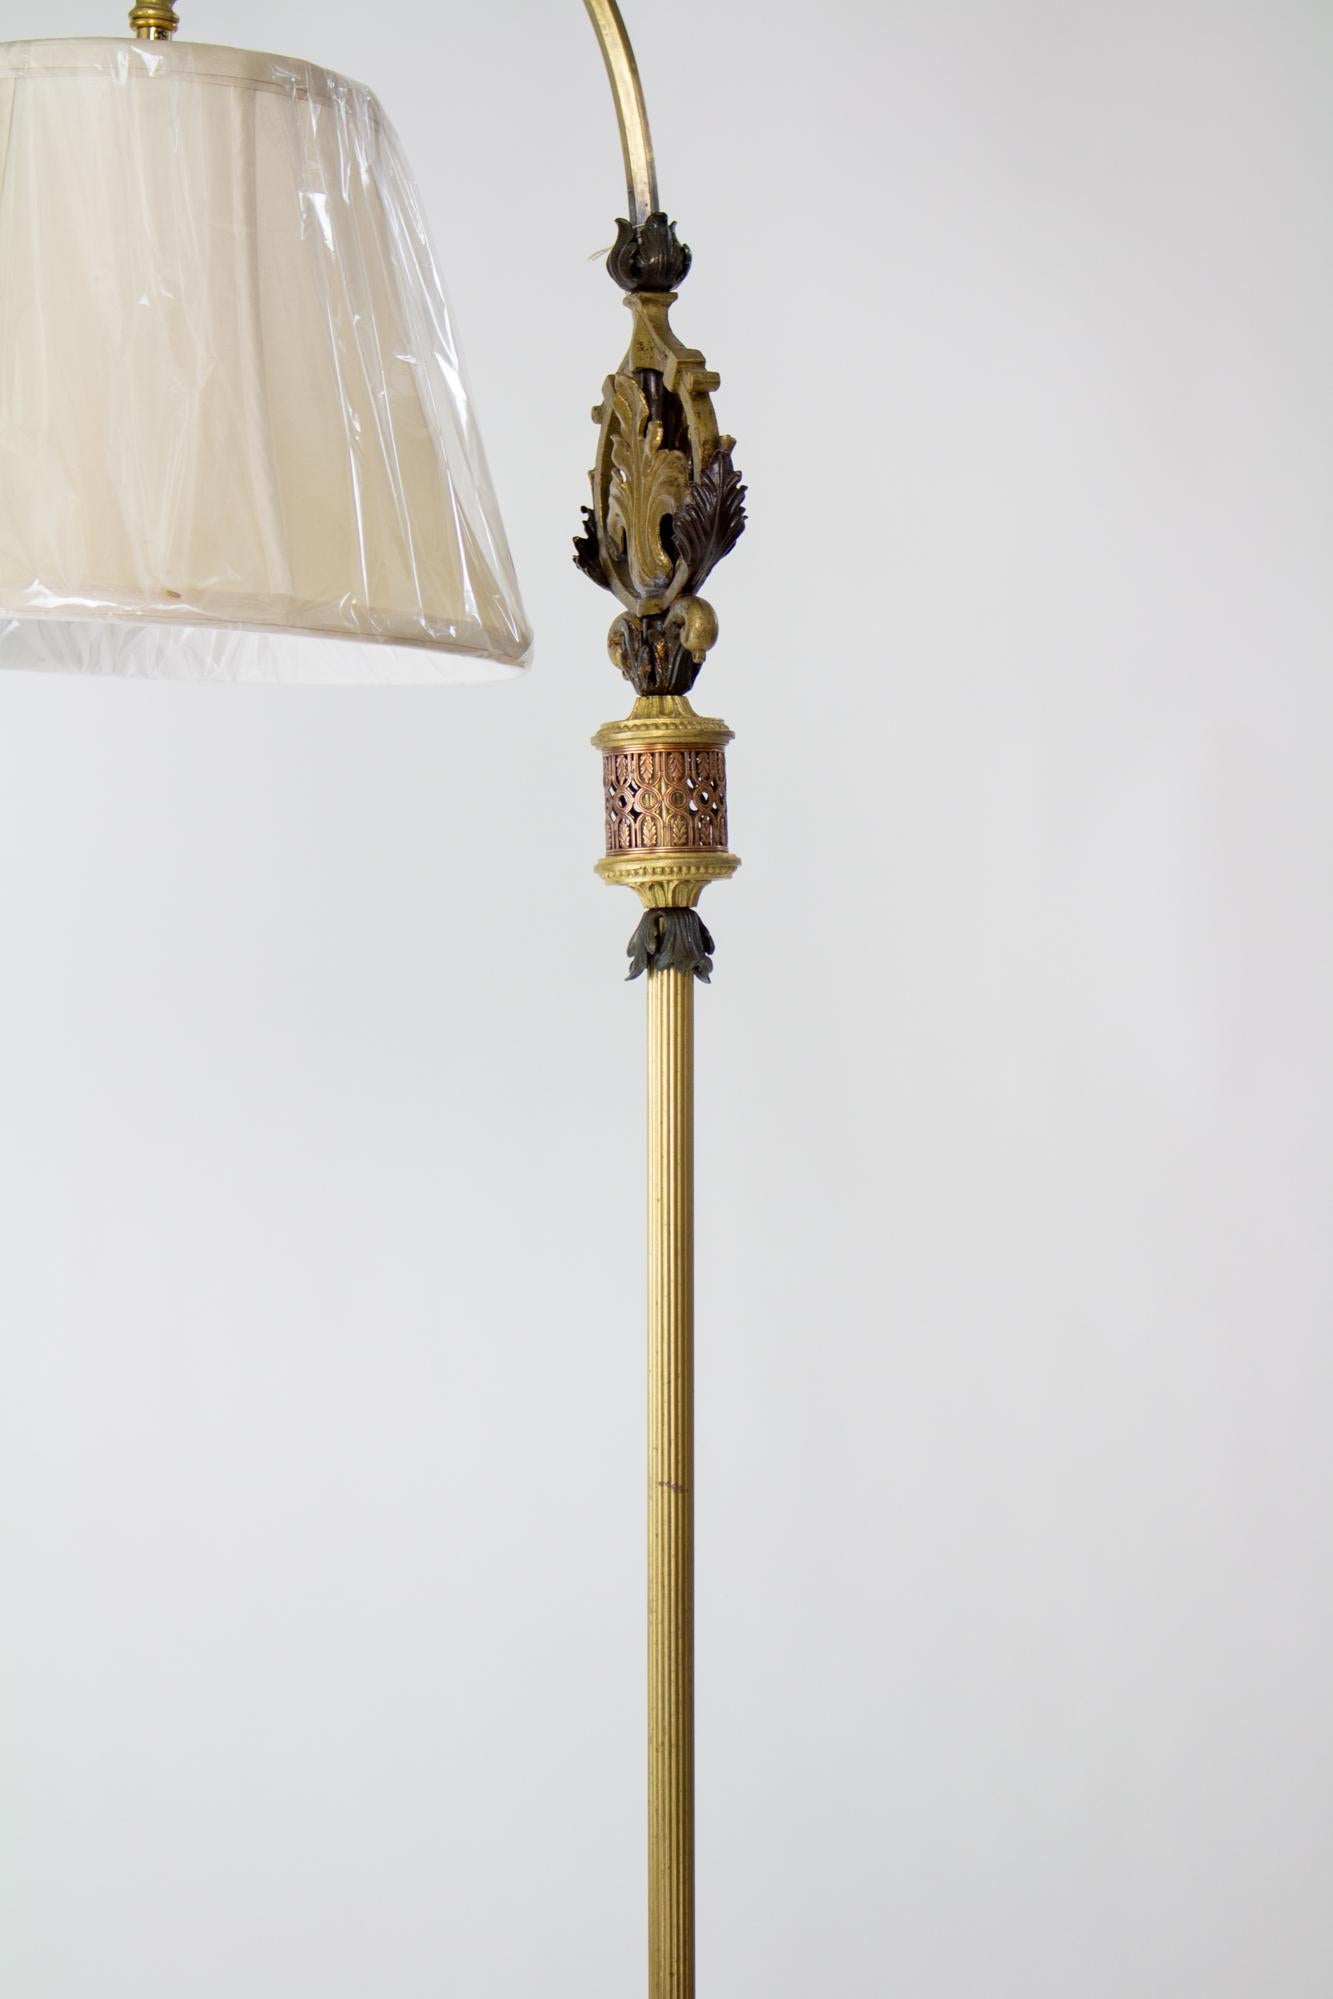 Rokoko-Revival-Lampe aus Gusseisen und Messing mit Schirm aus den 1920er Jahren. Verschnörkelte Mischung aus Gusseisen und Messing entlang des Sockels und des Stiels mit blattförmigen Mustern. Der gebogene Arm hält den Schirm. Amerikanisch. Der